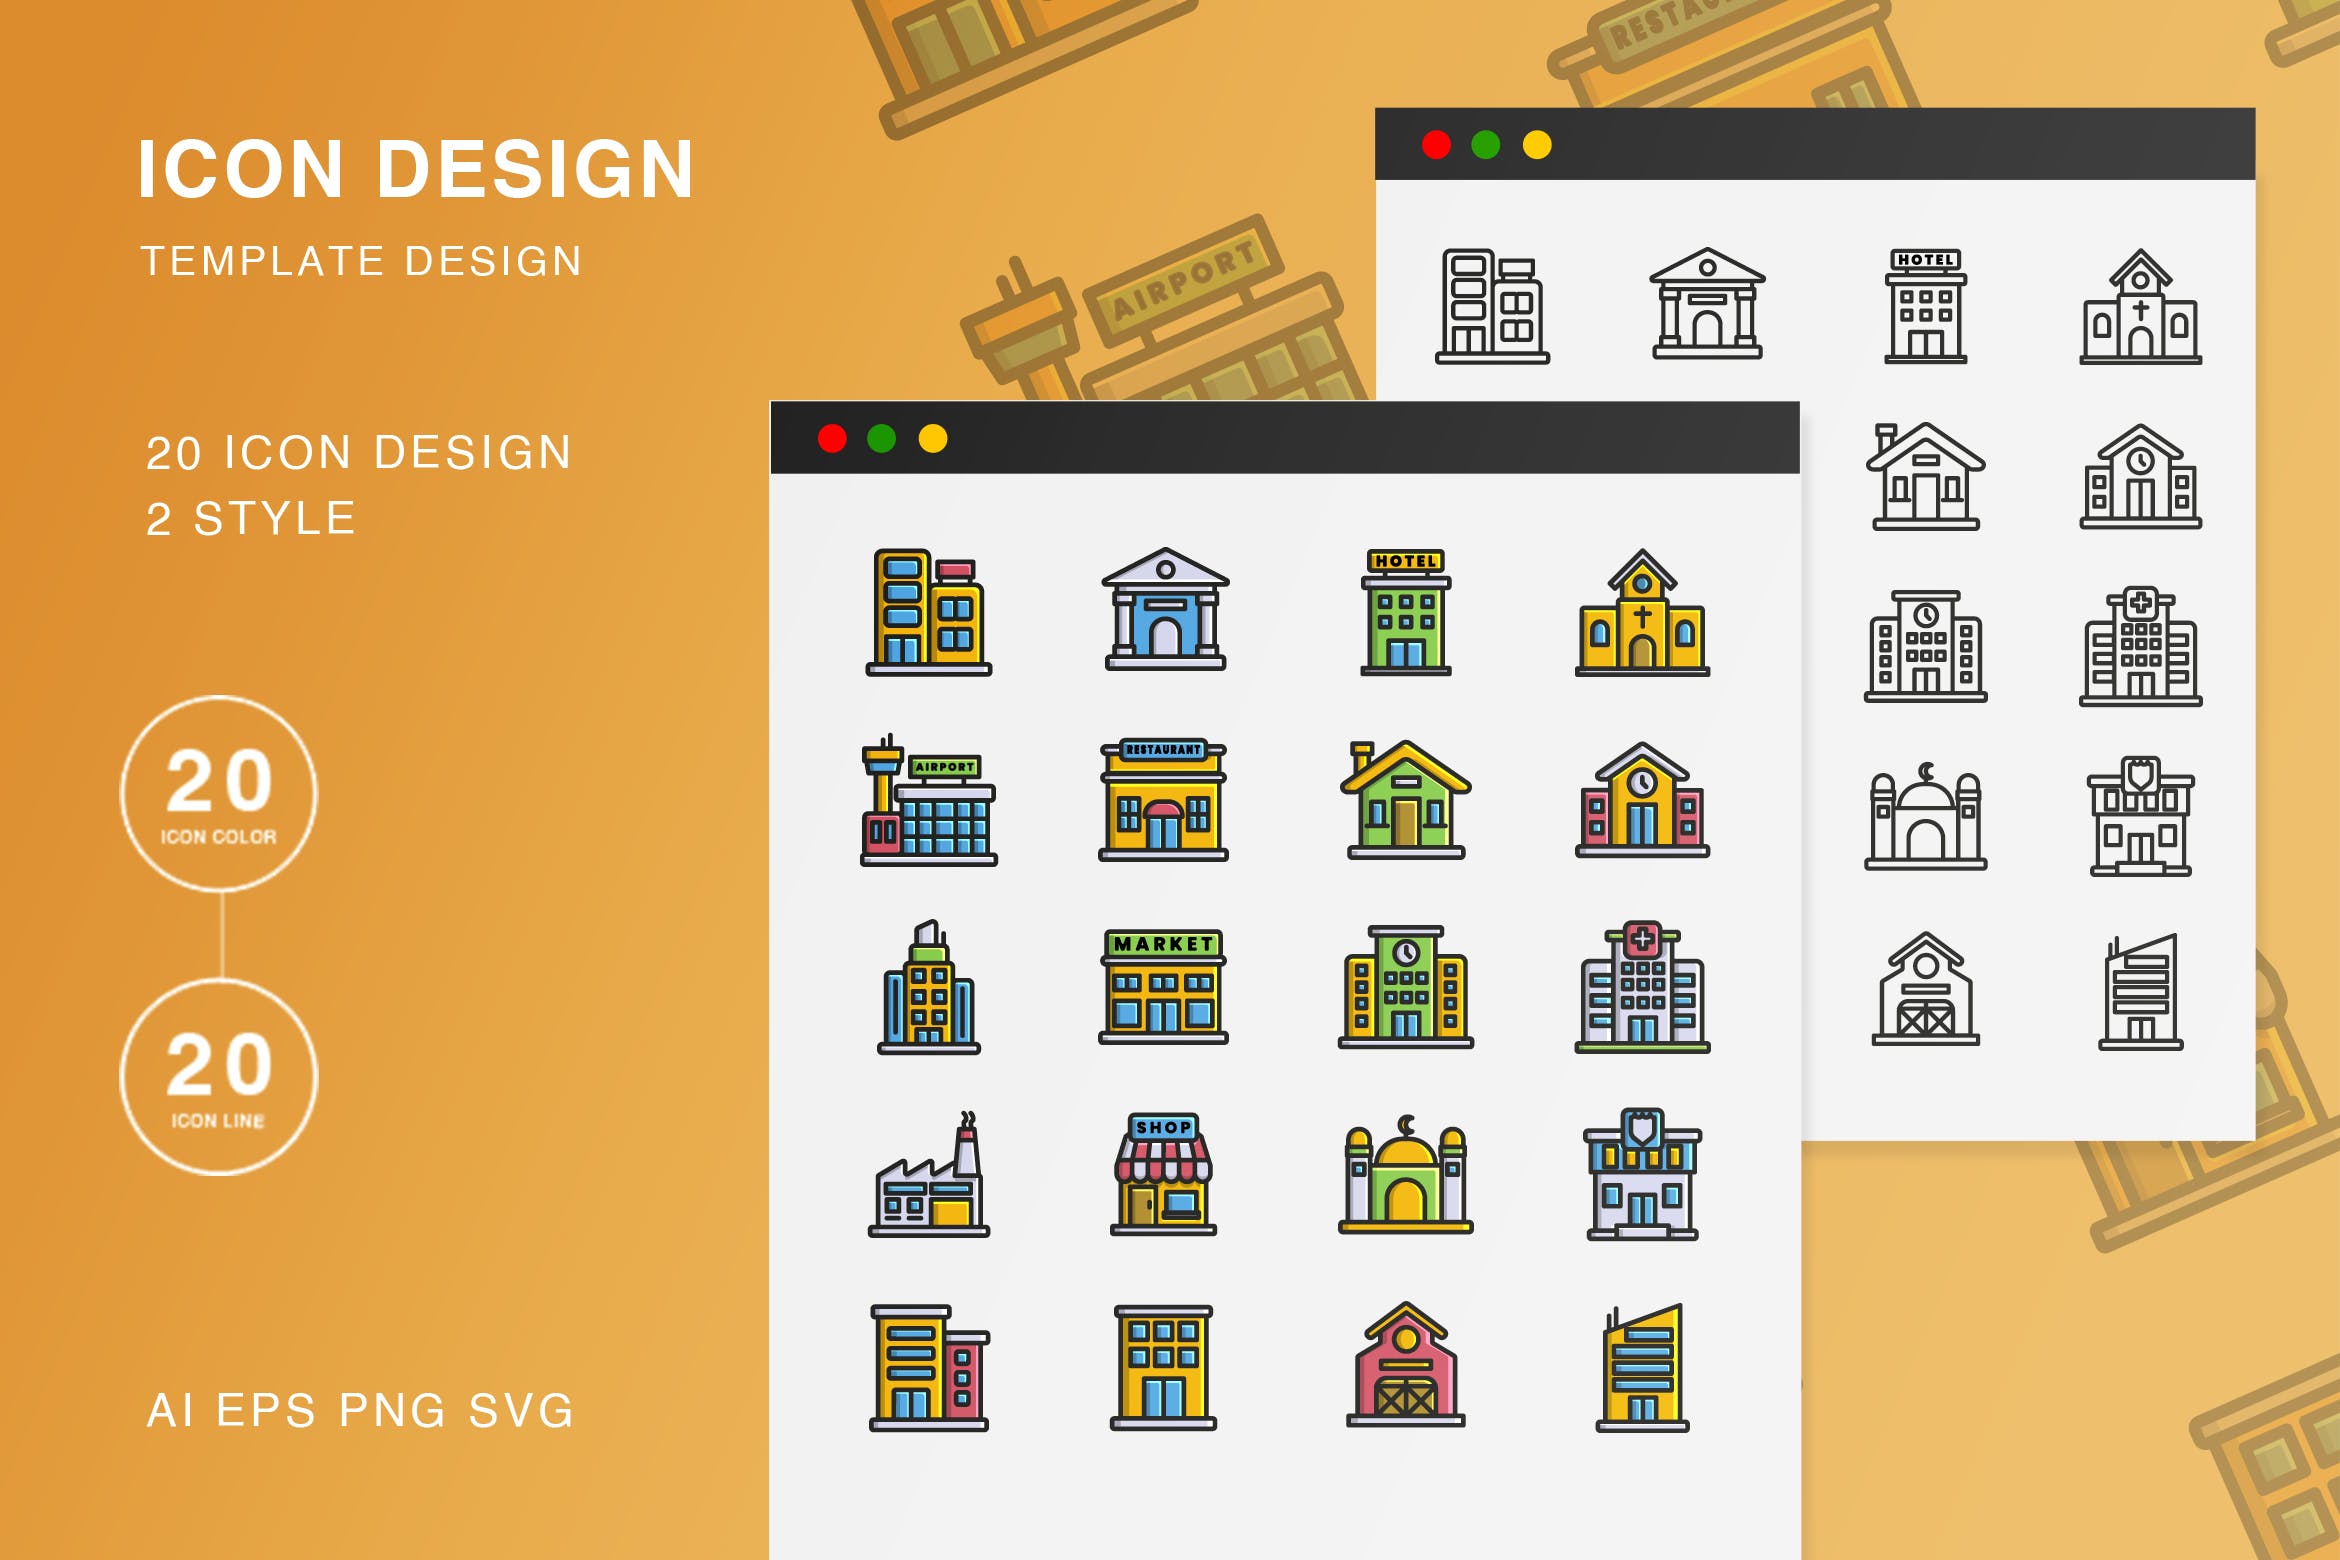 矢量可编辑SVG图标房屋建筑矢量轮廓图标素材免费下载